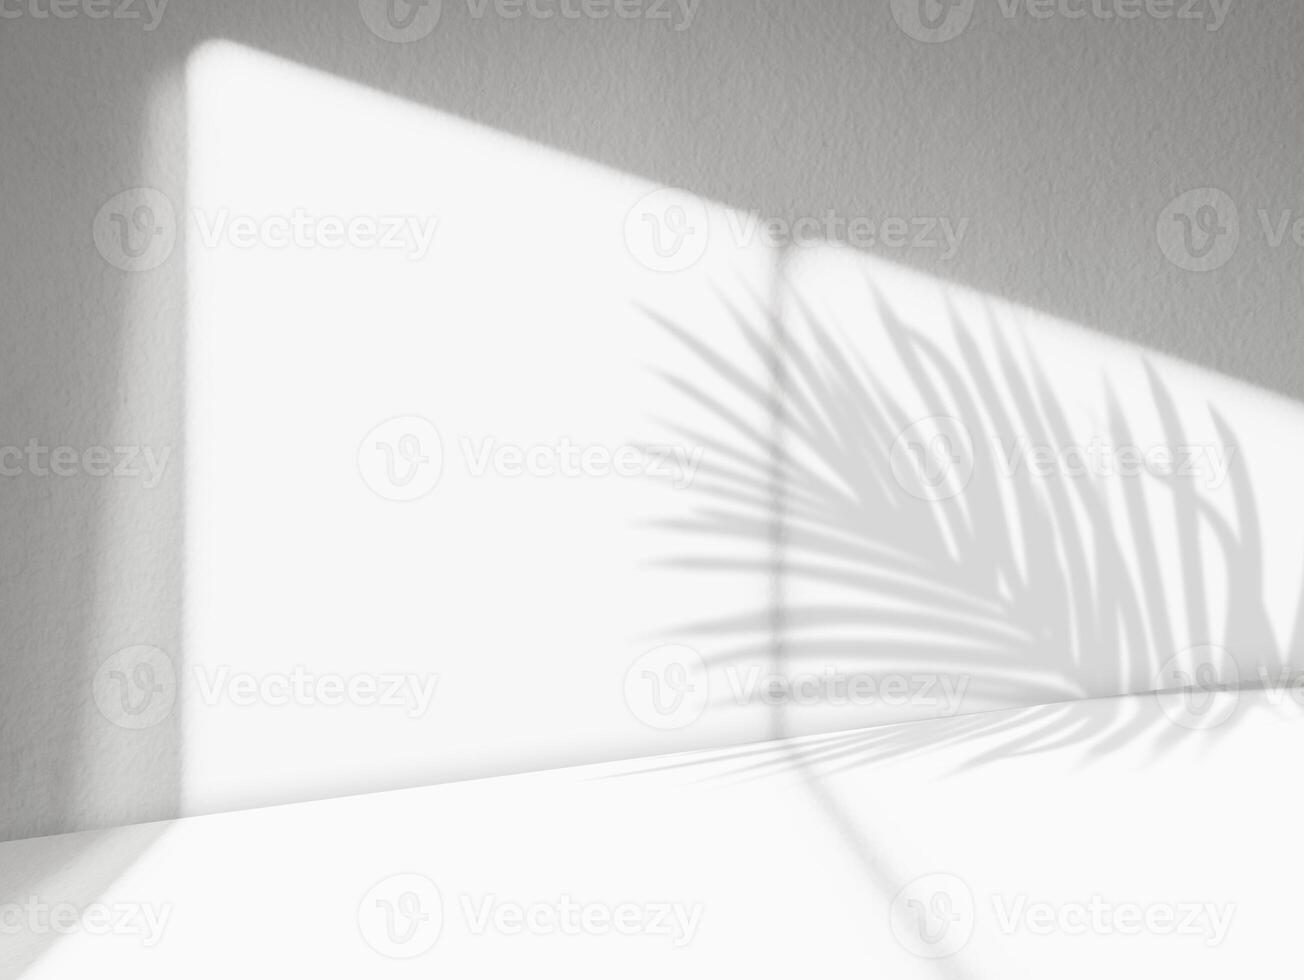 vit bakgrund med ljus av fönster ram, handflata löv skugga på betong vägg yta textur, tom grå cement studio rum med solljus reflektera på vägg bakgrund, bakgrund för produkt design foto